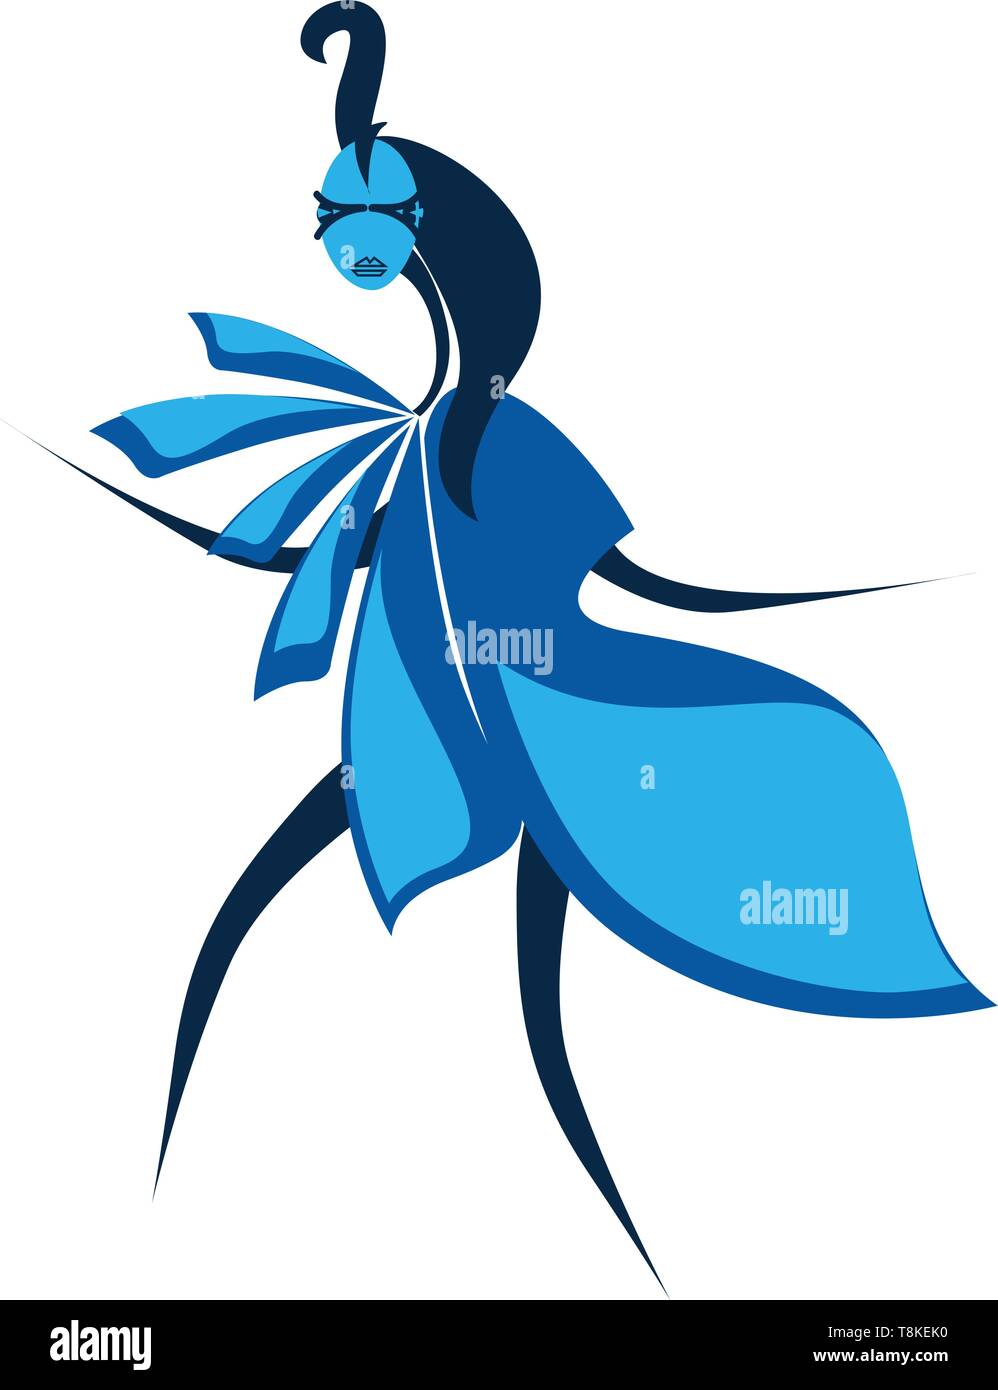 Un caractère très agressif dans un costume bleu, avec les longs cheveux de son front et stick-comme les jambes et les mains, se dresse comme si terrifiant d'assau Illustration de Vecteur